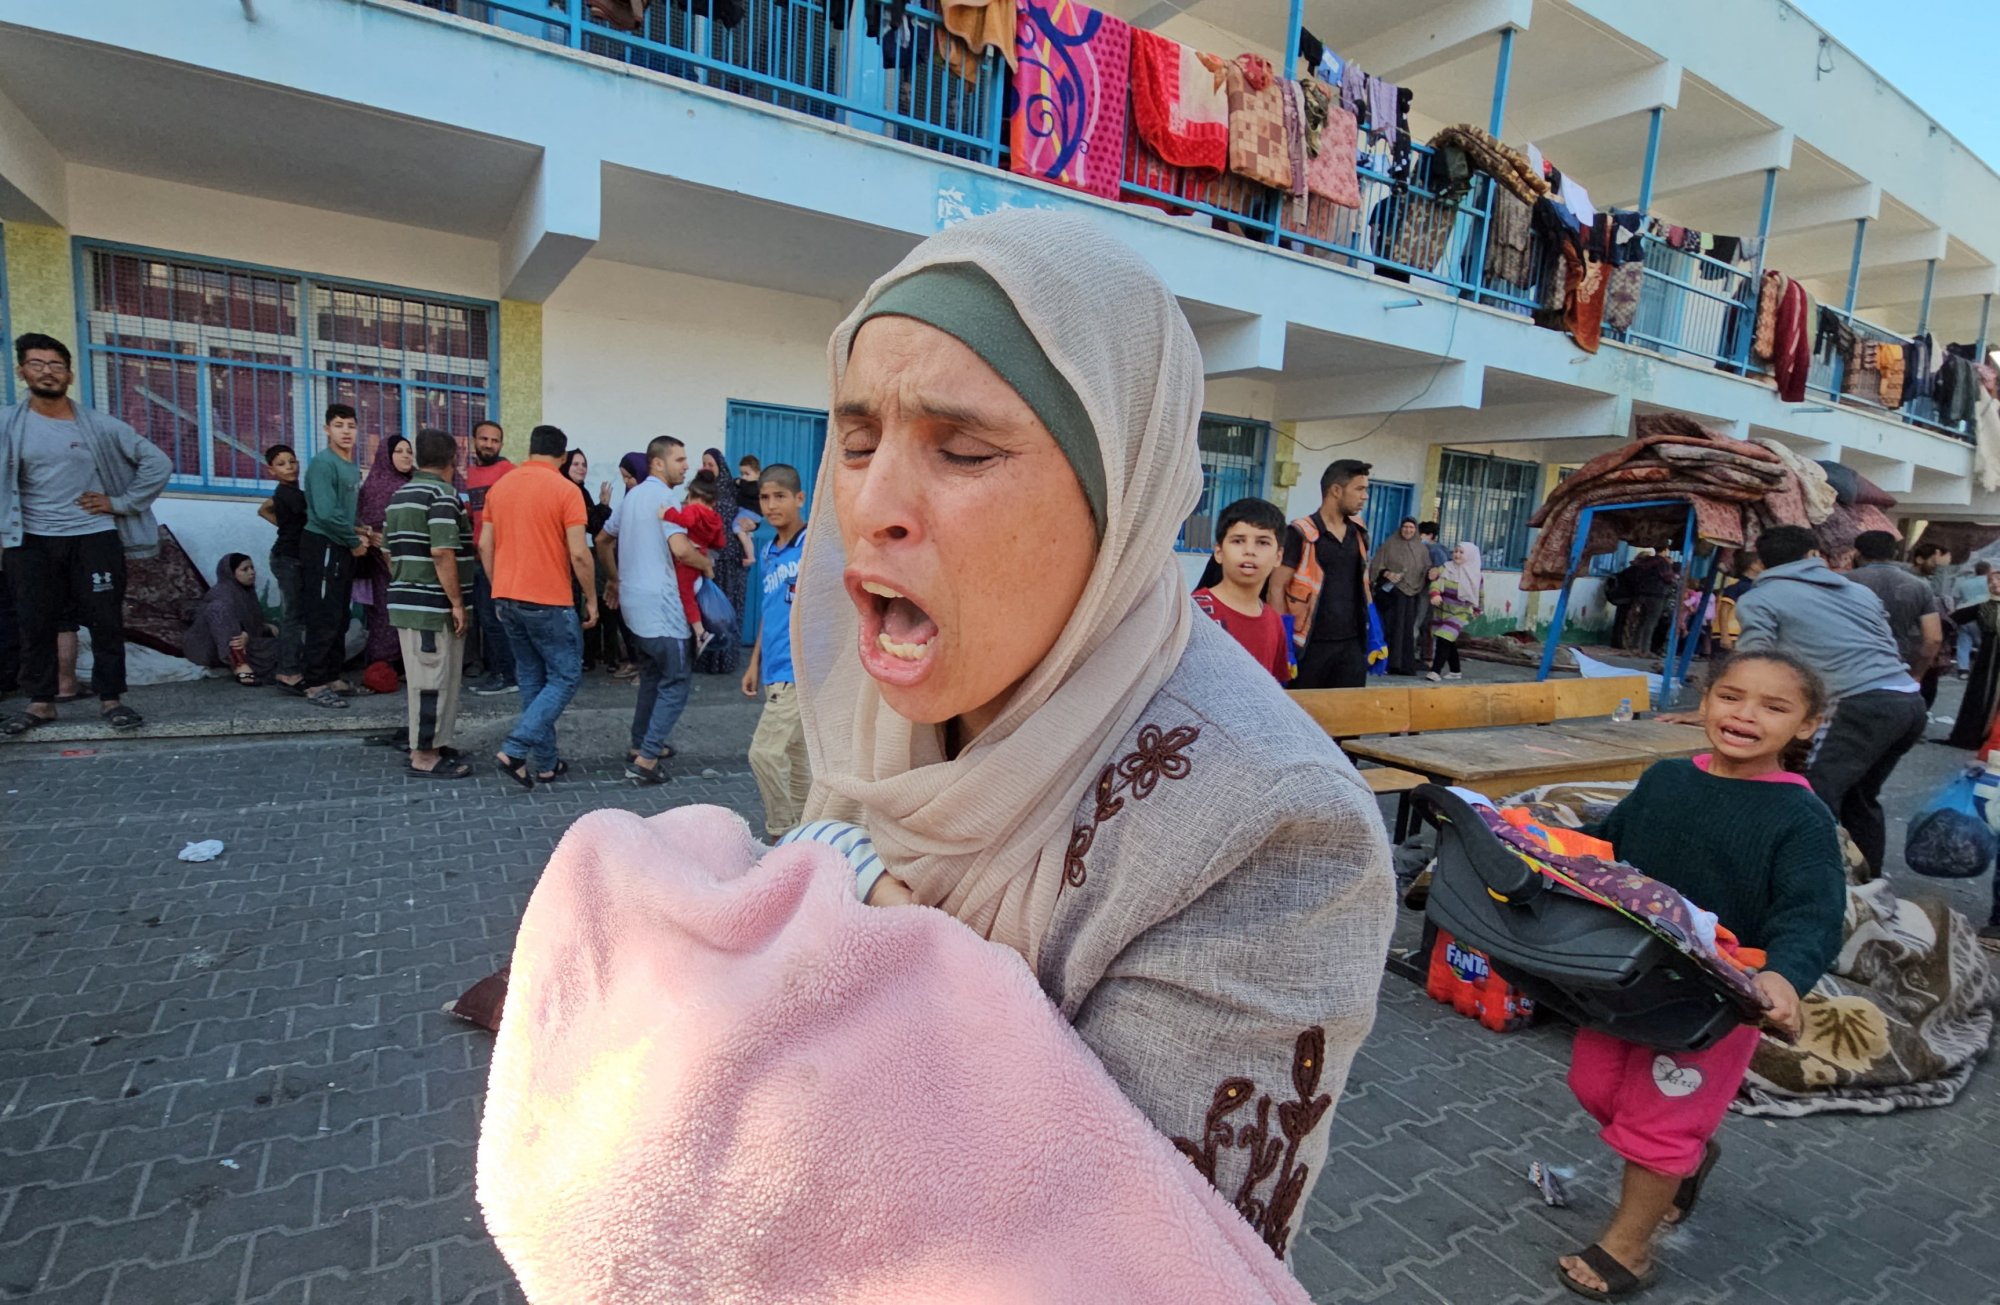 Παλαιστίνη: Η Λωρίδα της Γάζας πλέον έχει χωρίστεί σε βόρεια και νότια – Εγκλωβισμένοι άμαχοι